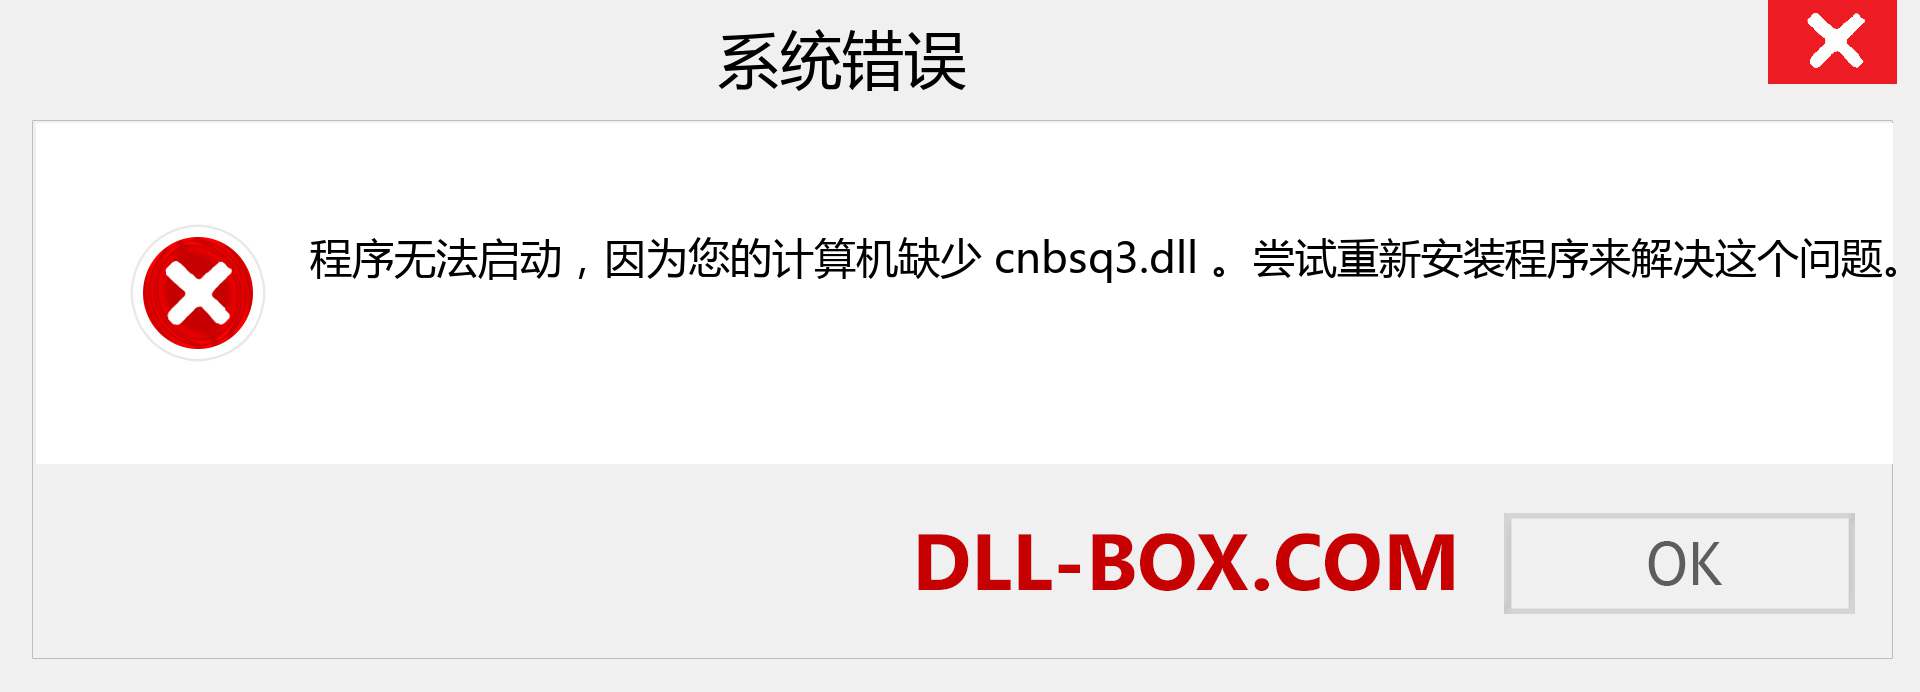 cnbsq3.dll 文件丢失？。 适用于 Windows 7、8、10 的下载 - 修复 Windows、照片、图像上的 cnbsq3 dll 丢失错误